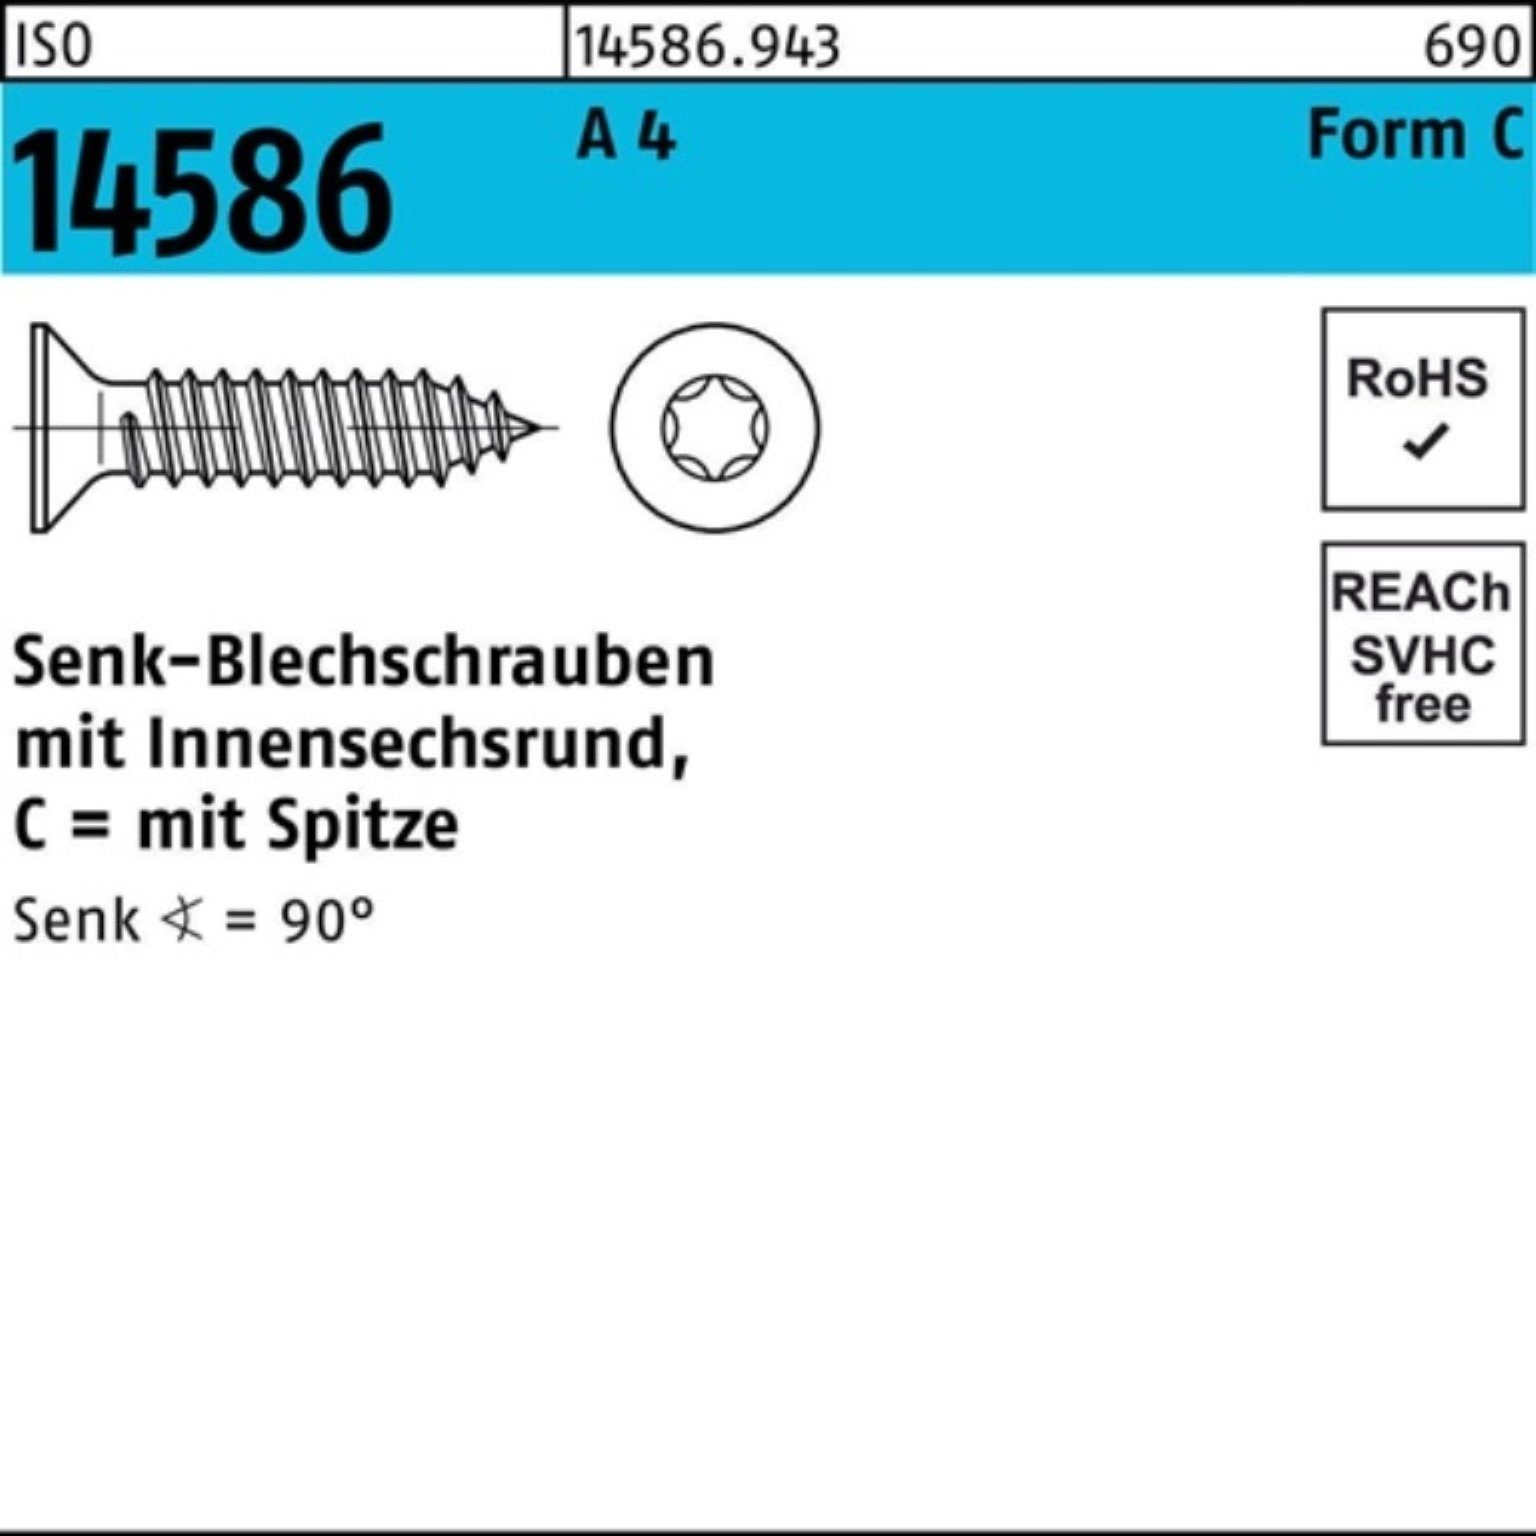 Reyher Schraube 1000er Pack Senkblechschraube A 6,5-T10 14586 ISR/Spitze 4 ISO 2,9x 10